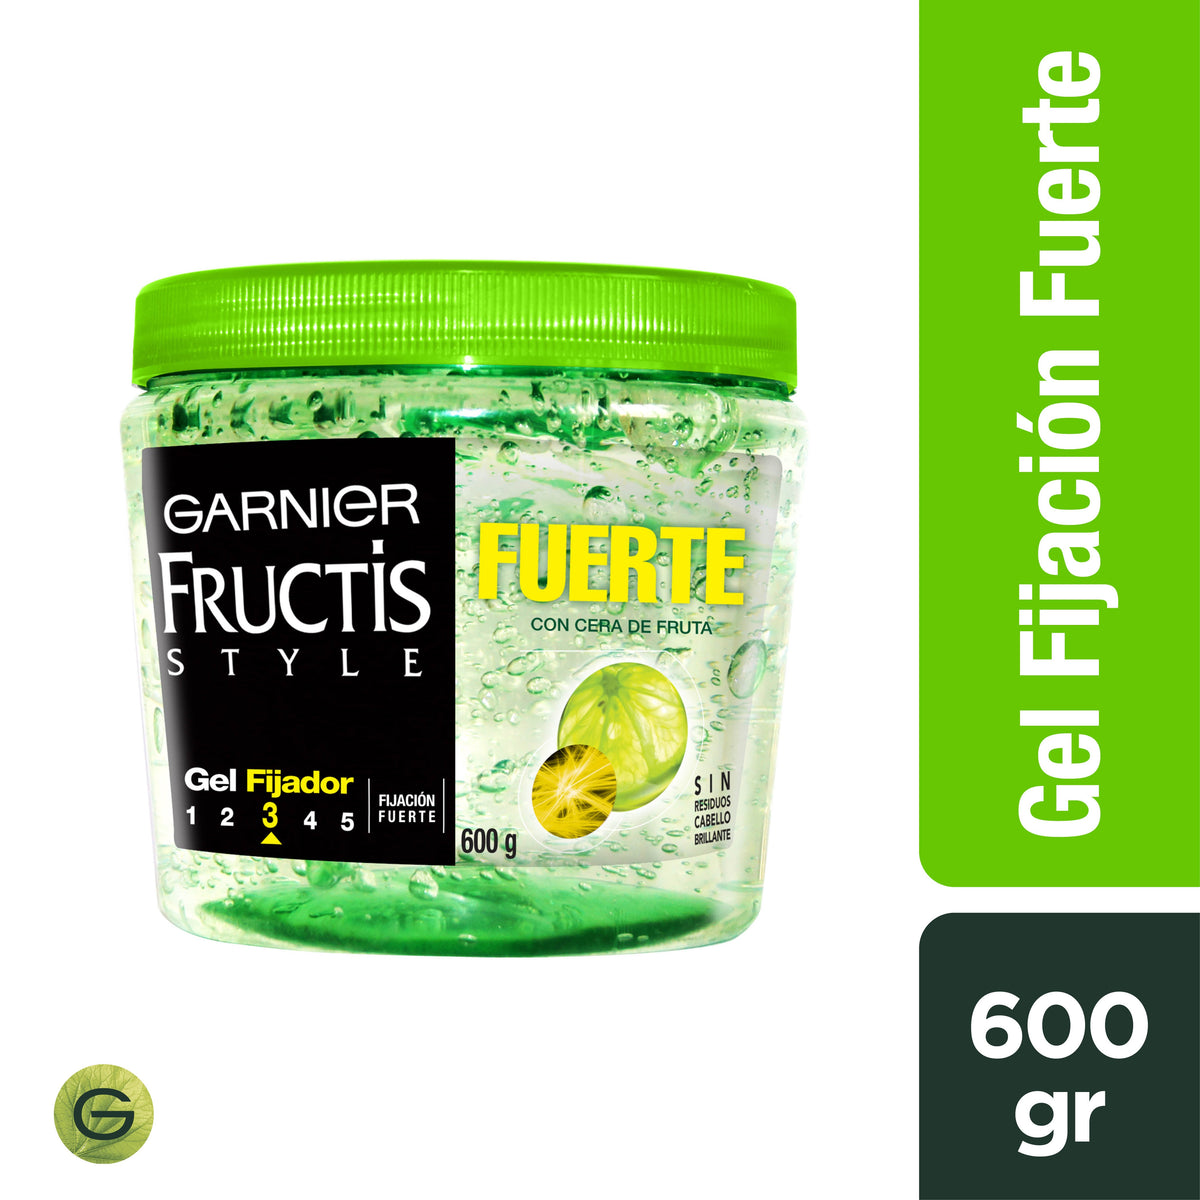 Fructis Style Fuerte Tarro 600 gr